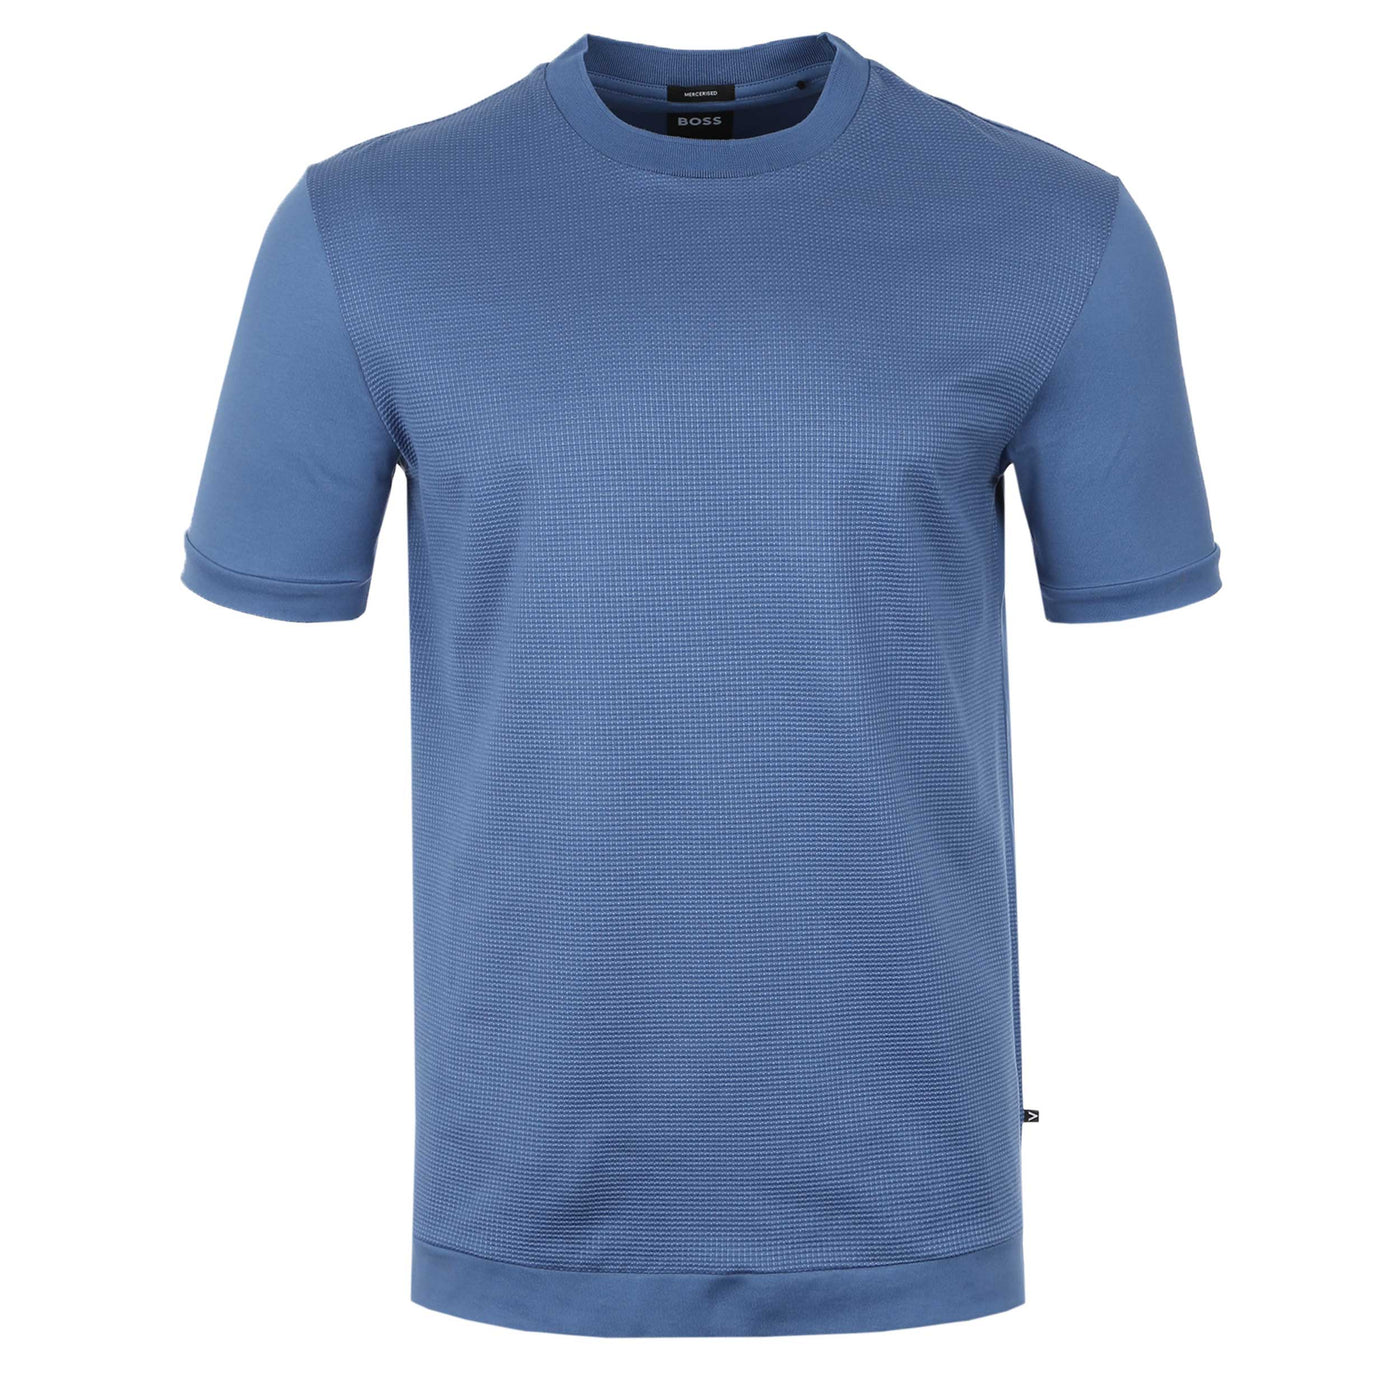 BOSS P Tiburt 425 T Shirt in French Blue